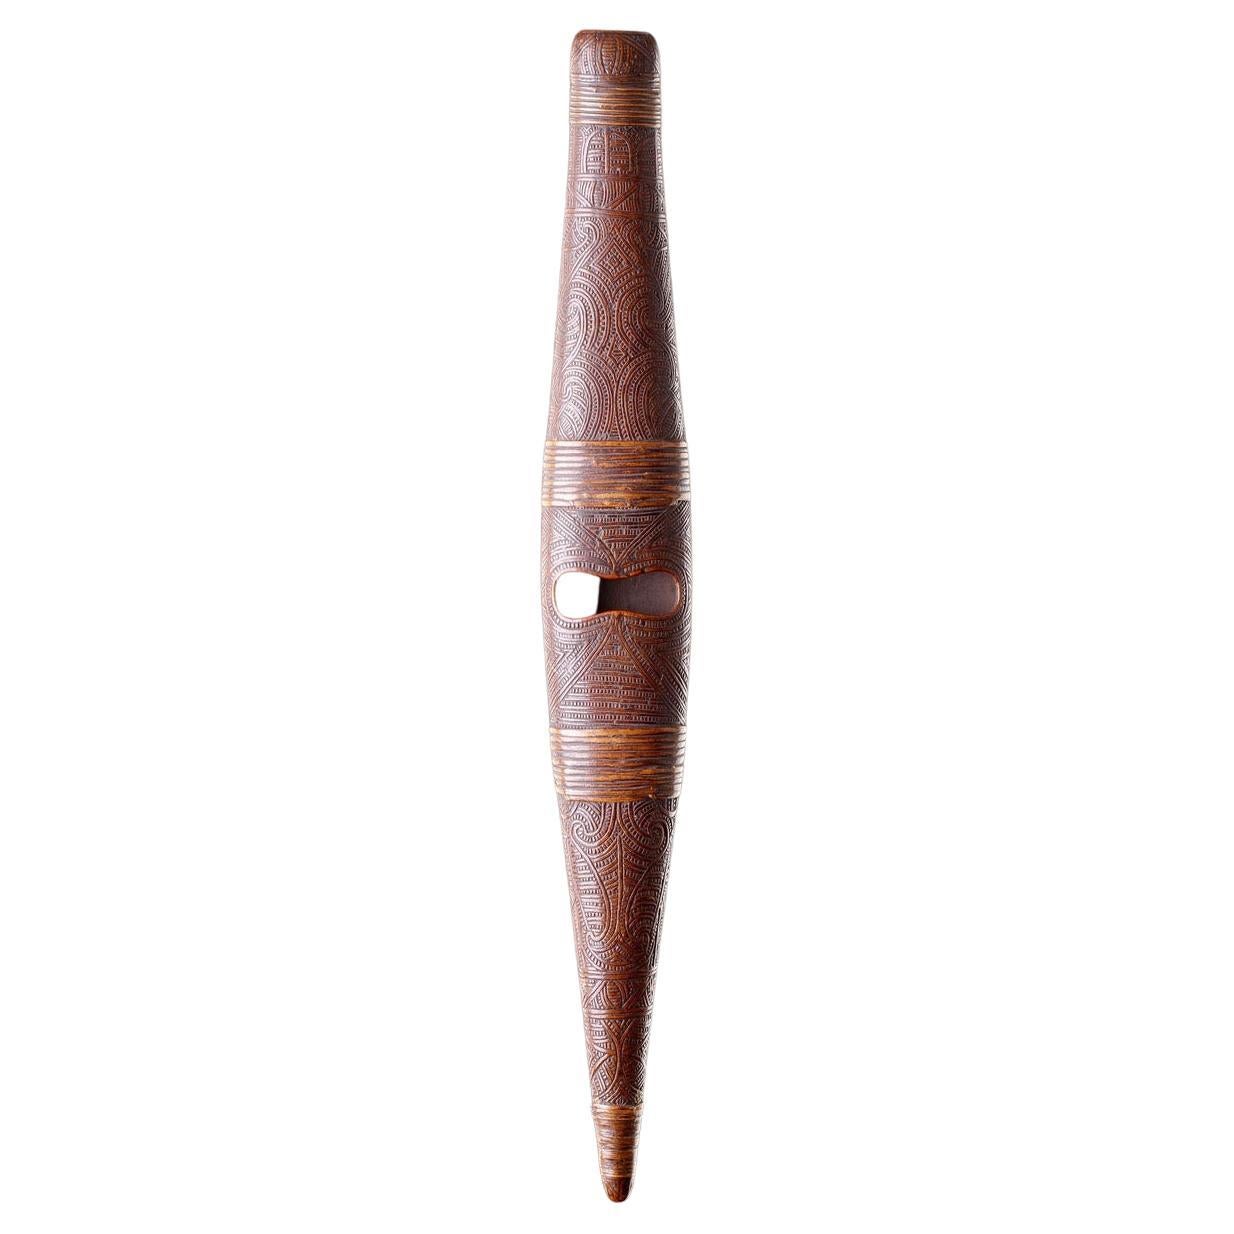 Exceptionnelle flûte traversière Māori "Pu Turino" de Nouvelle-Zélande